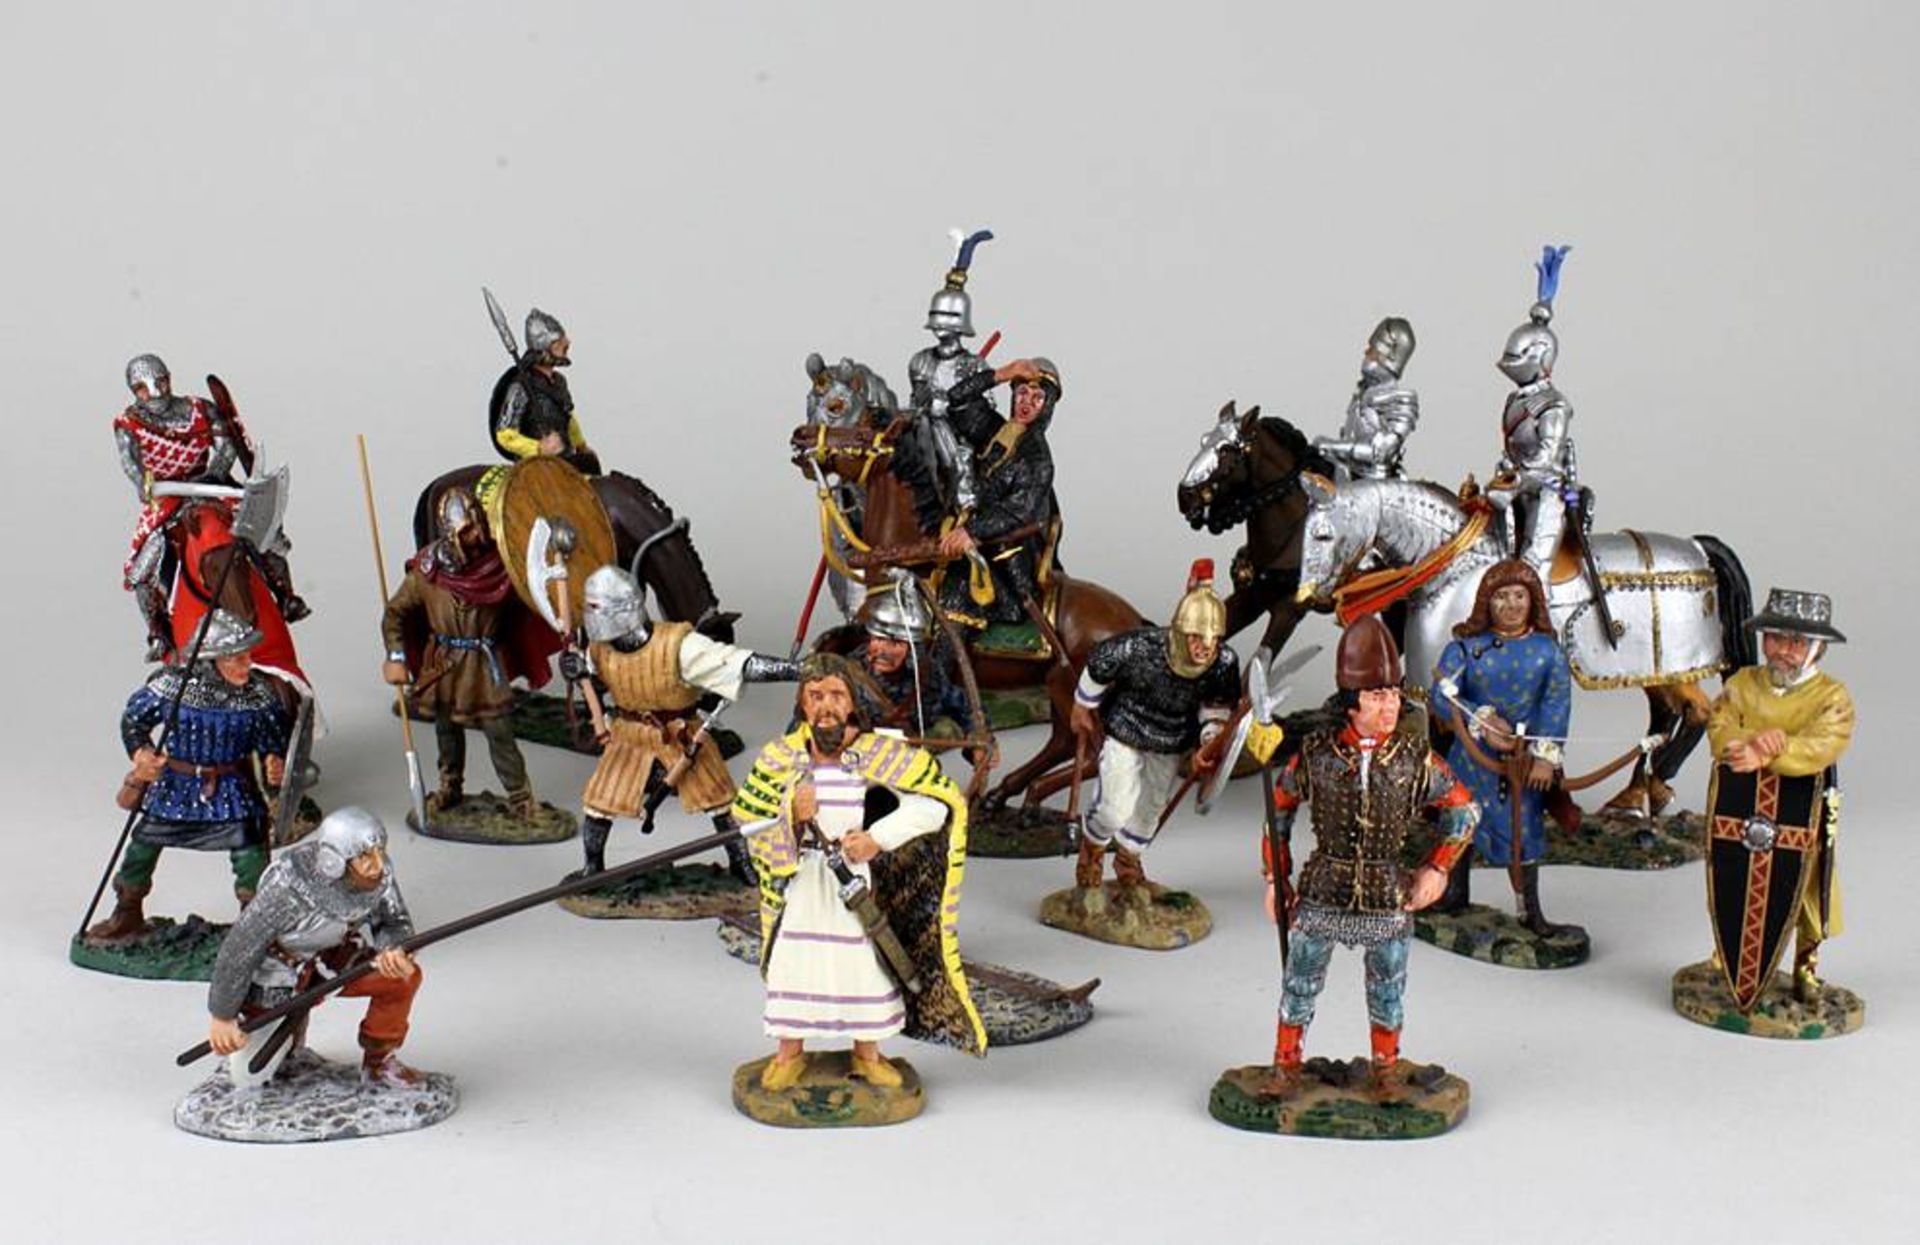 16 delPrado Zinnfiguren, 6 Reiterfiguren und 10 Fußfiguren historischer Krieger. Höhe bis 11cm.